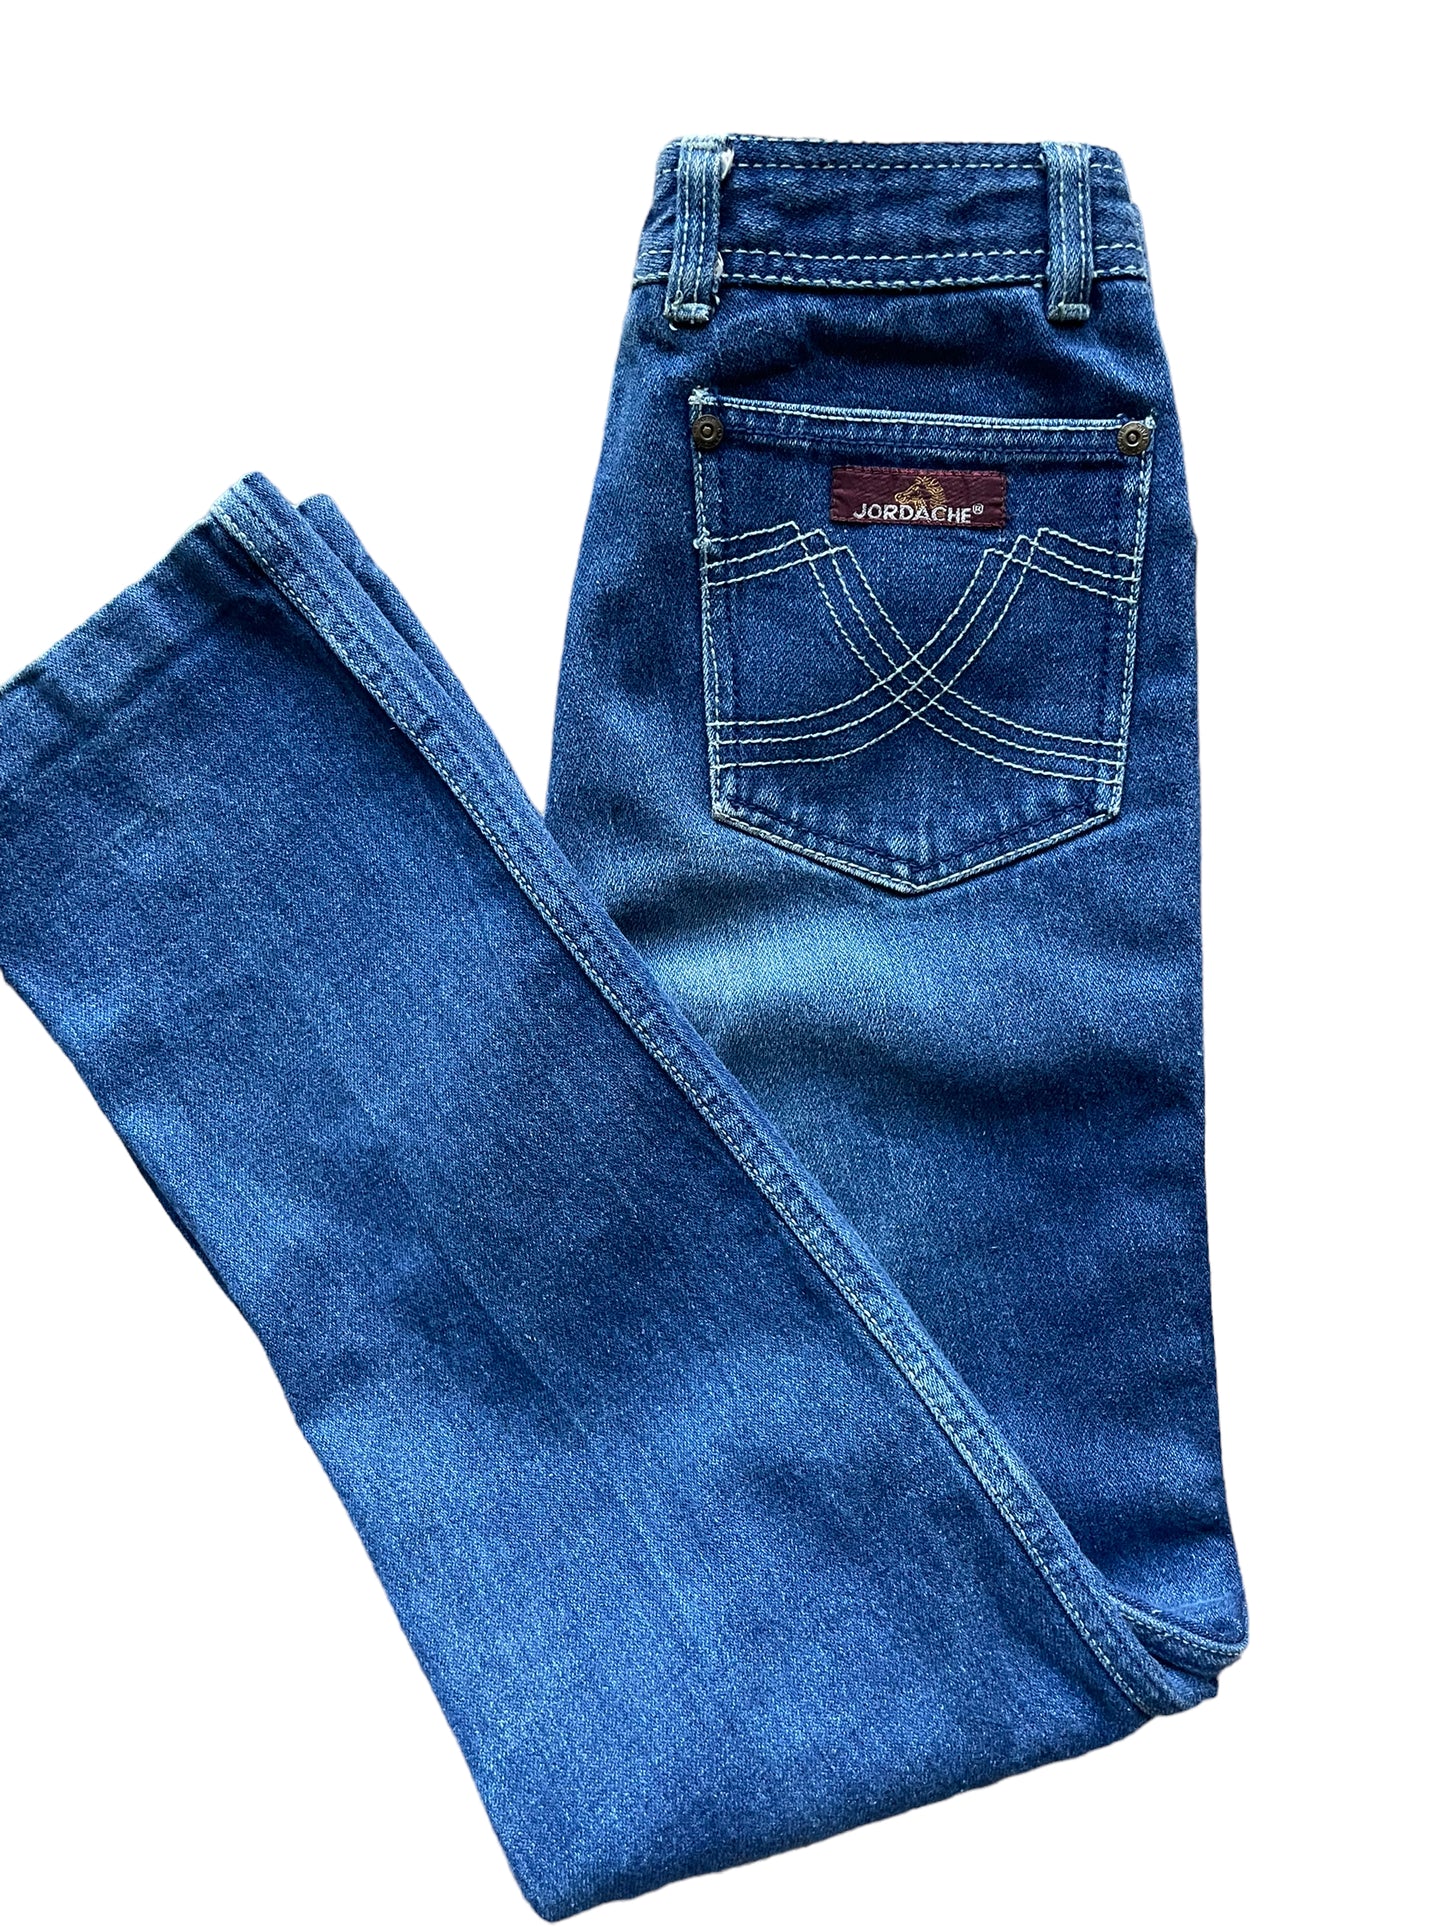 Vintage Jordache Girls Jeans Bow Detail Size 6 Cotton Denim